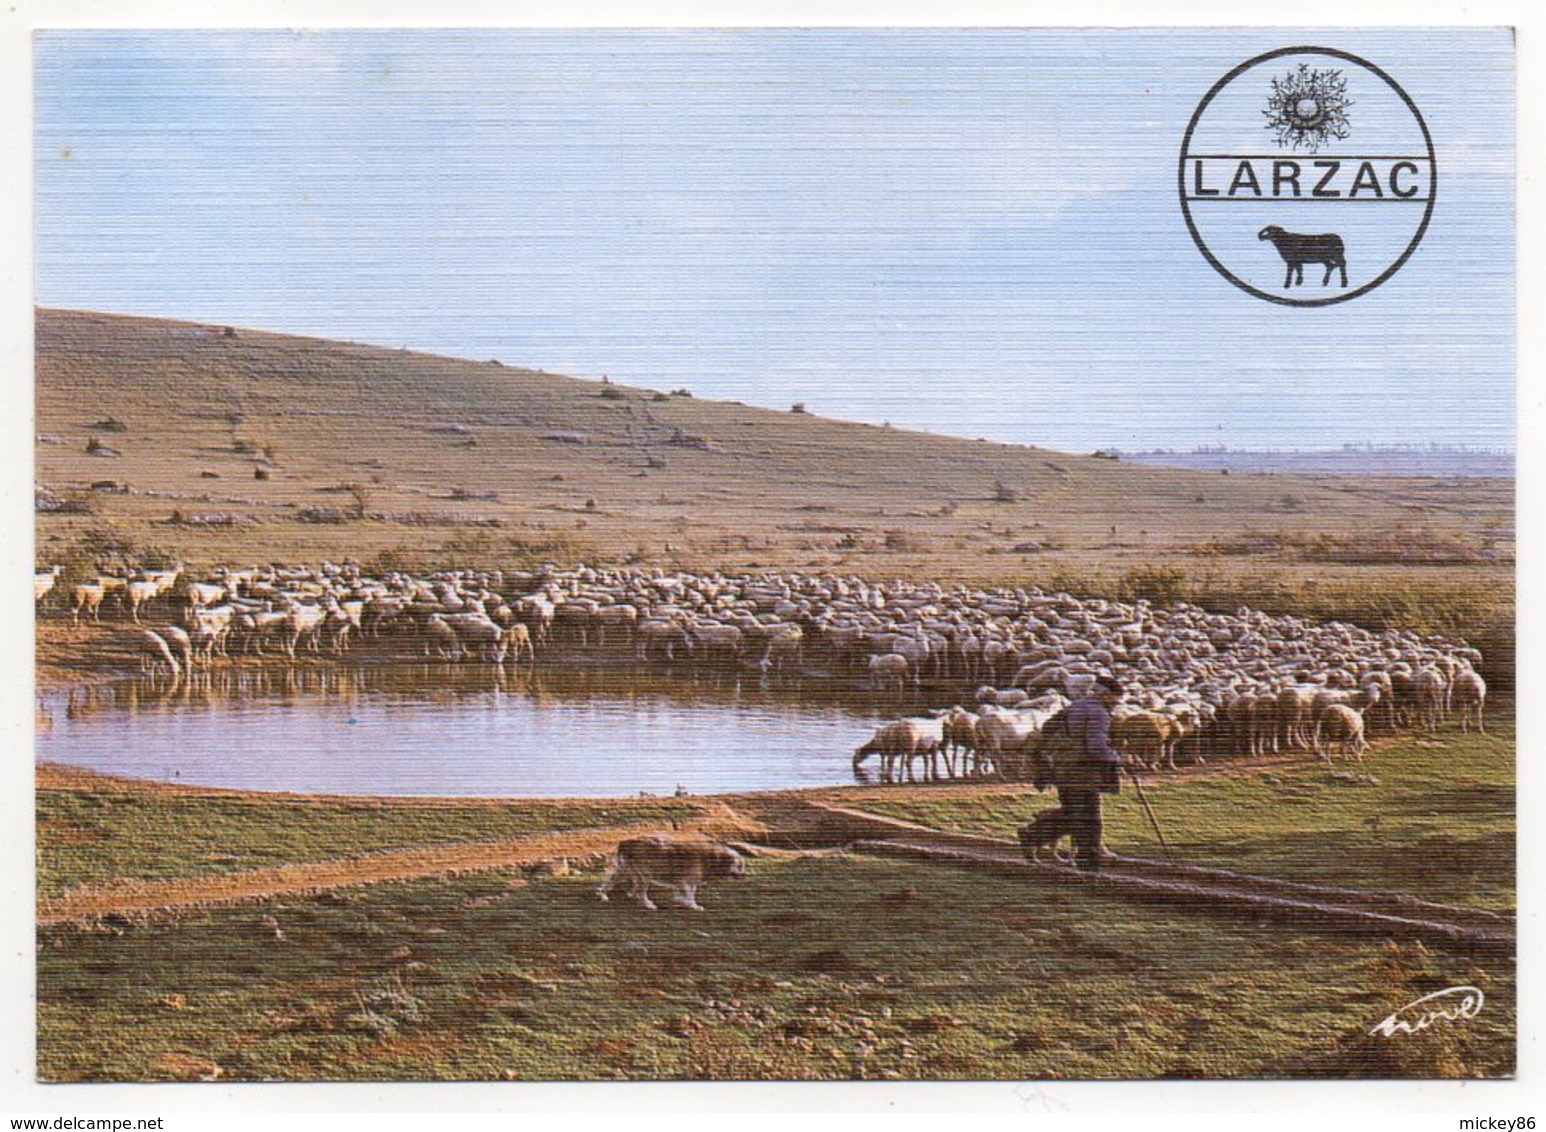 Causse Du Larzac -- Troupeau De Brebis à La "lavogne" (animée,chien,moutons )--carte Toilée - Elevage